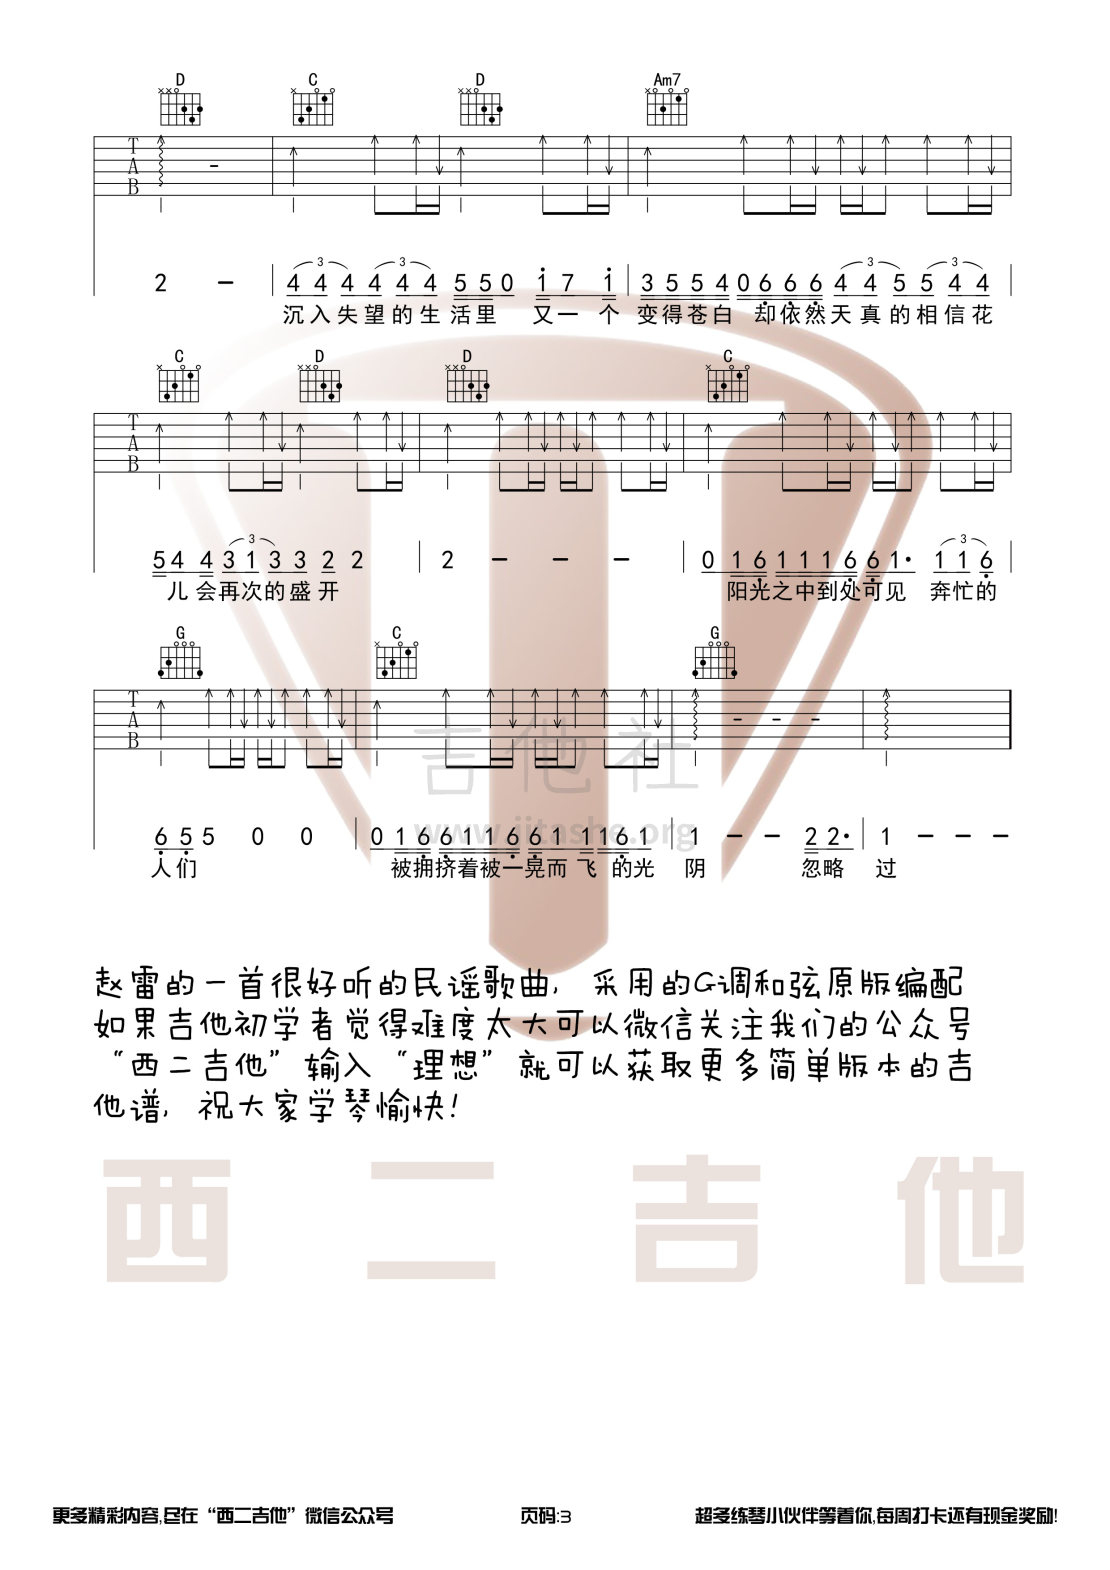 打印:理想(西二吉他)吉他谱_赵雷(雷子)_理想3.jpg